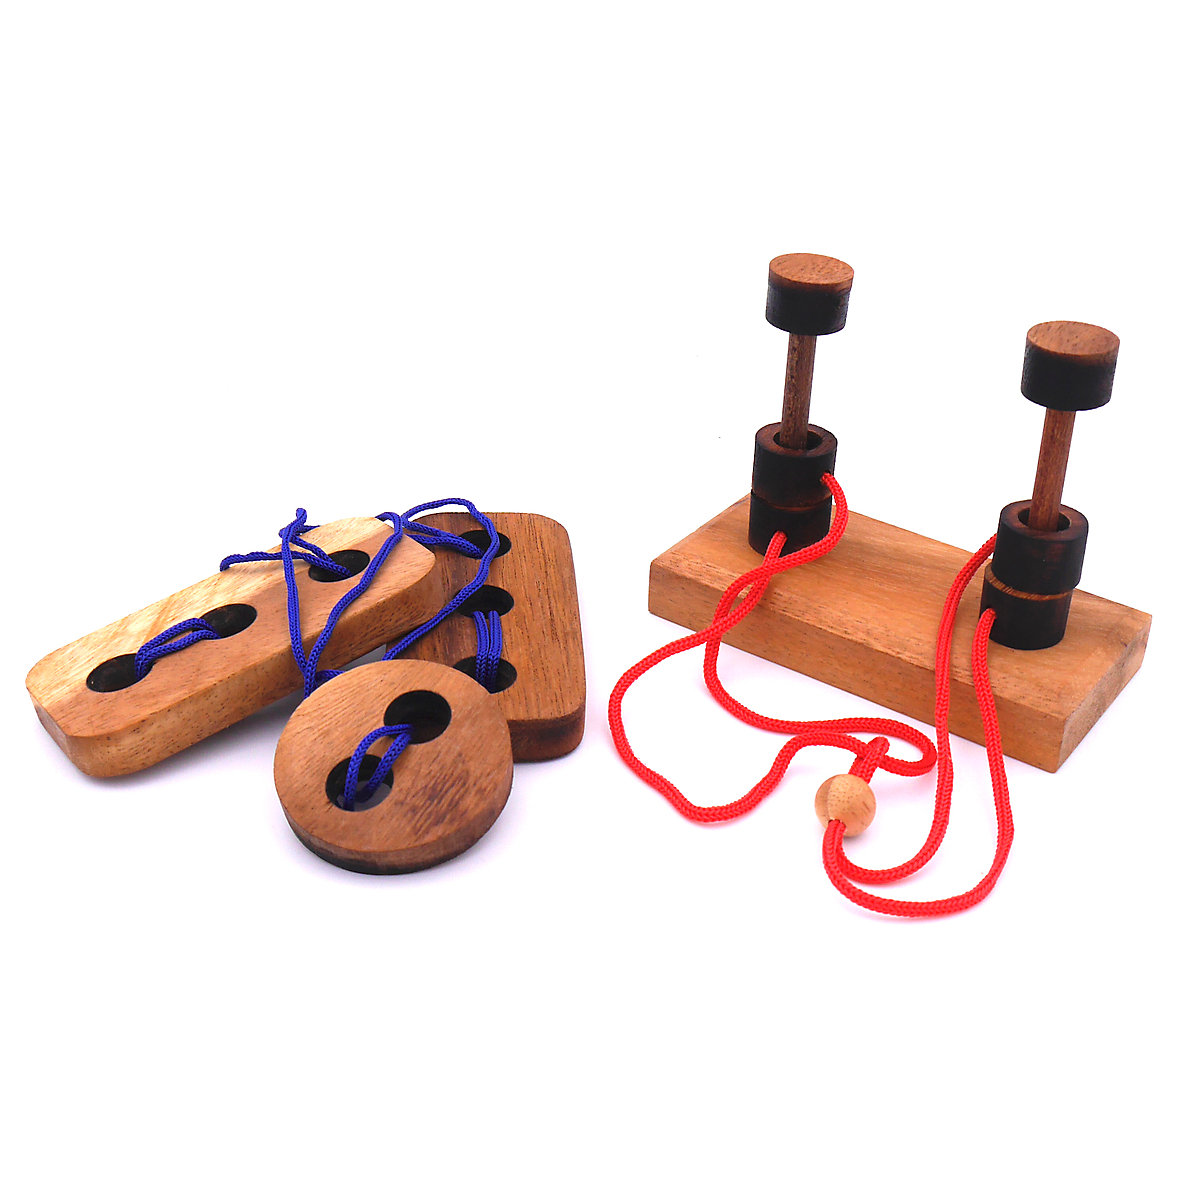 ROMBOL Seilpuzzle-Set mit unterschiedlichen kniffligen Knobelspielen für Kinder und Erwachsene